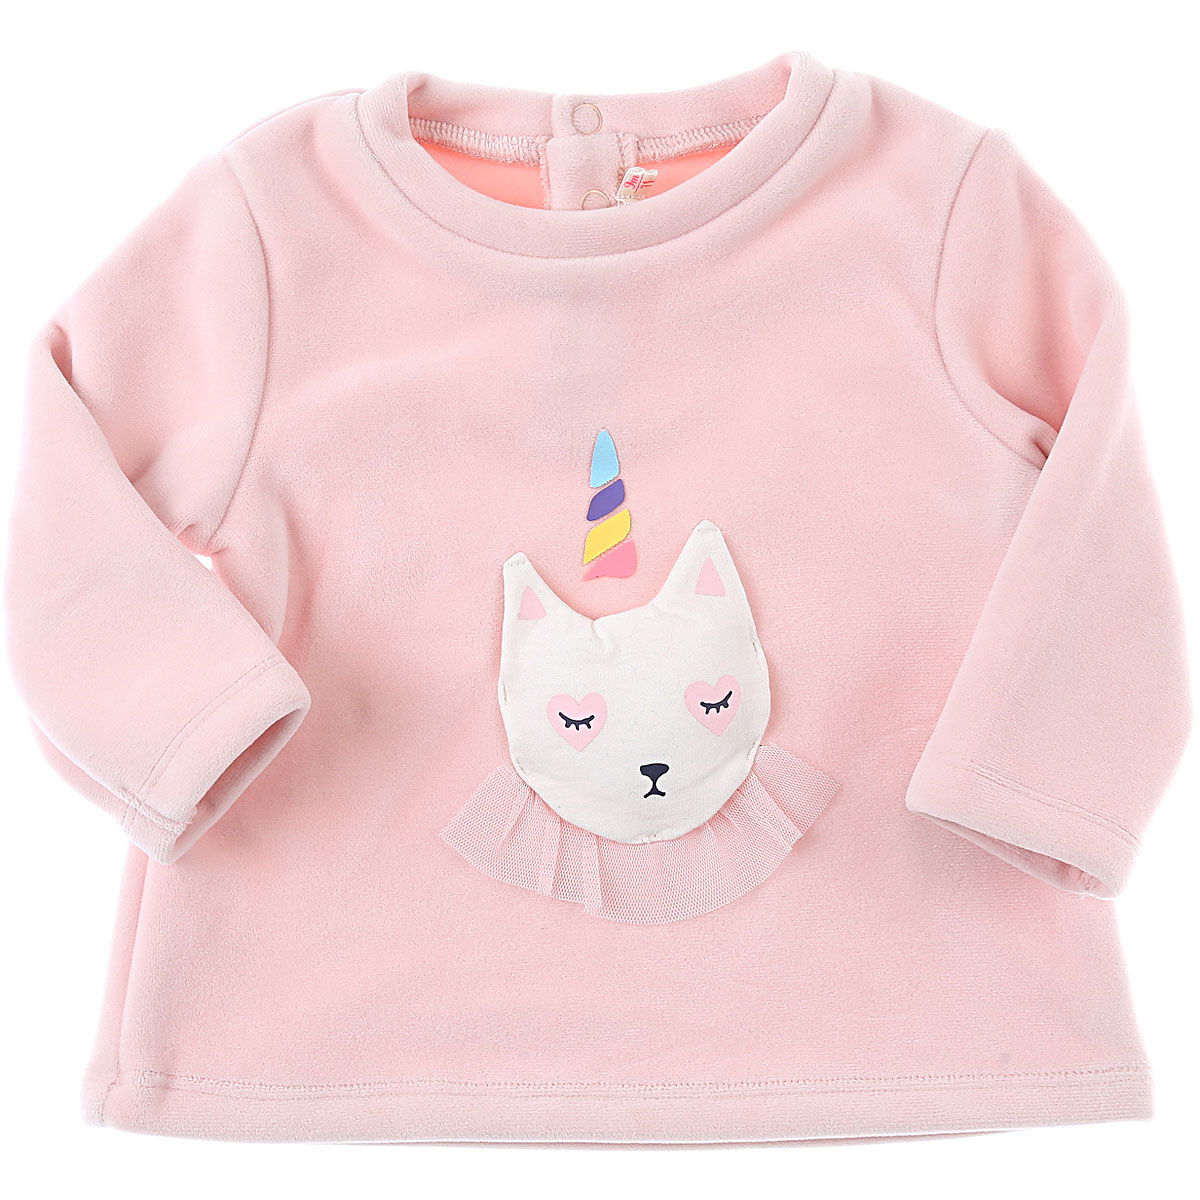 Billieblush Baby Sweatshirt & Kapuzenpullover für Mädchen Günstig im Sale, Baby-Rose, Polyester, 2017, 12M 18M 2Y 6M 9M